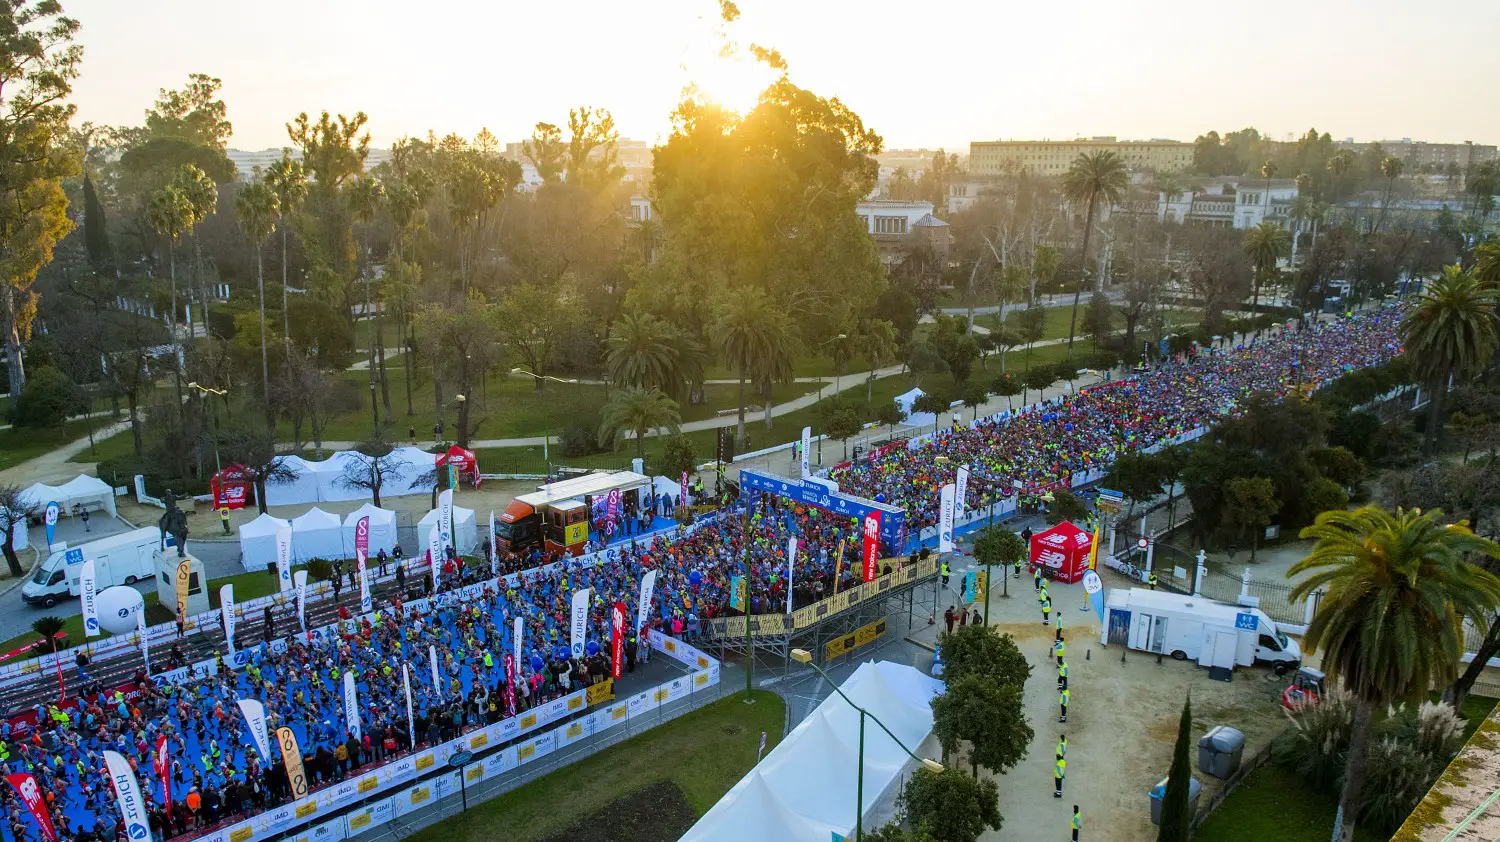 Tausende Läufer beim Zurich Marathon de Sevilla